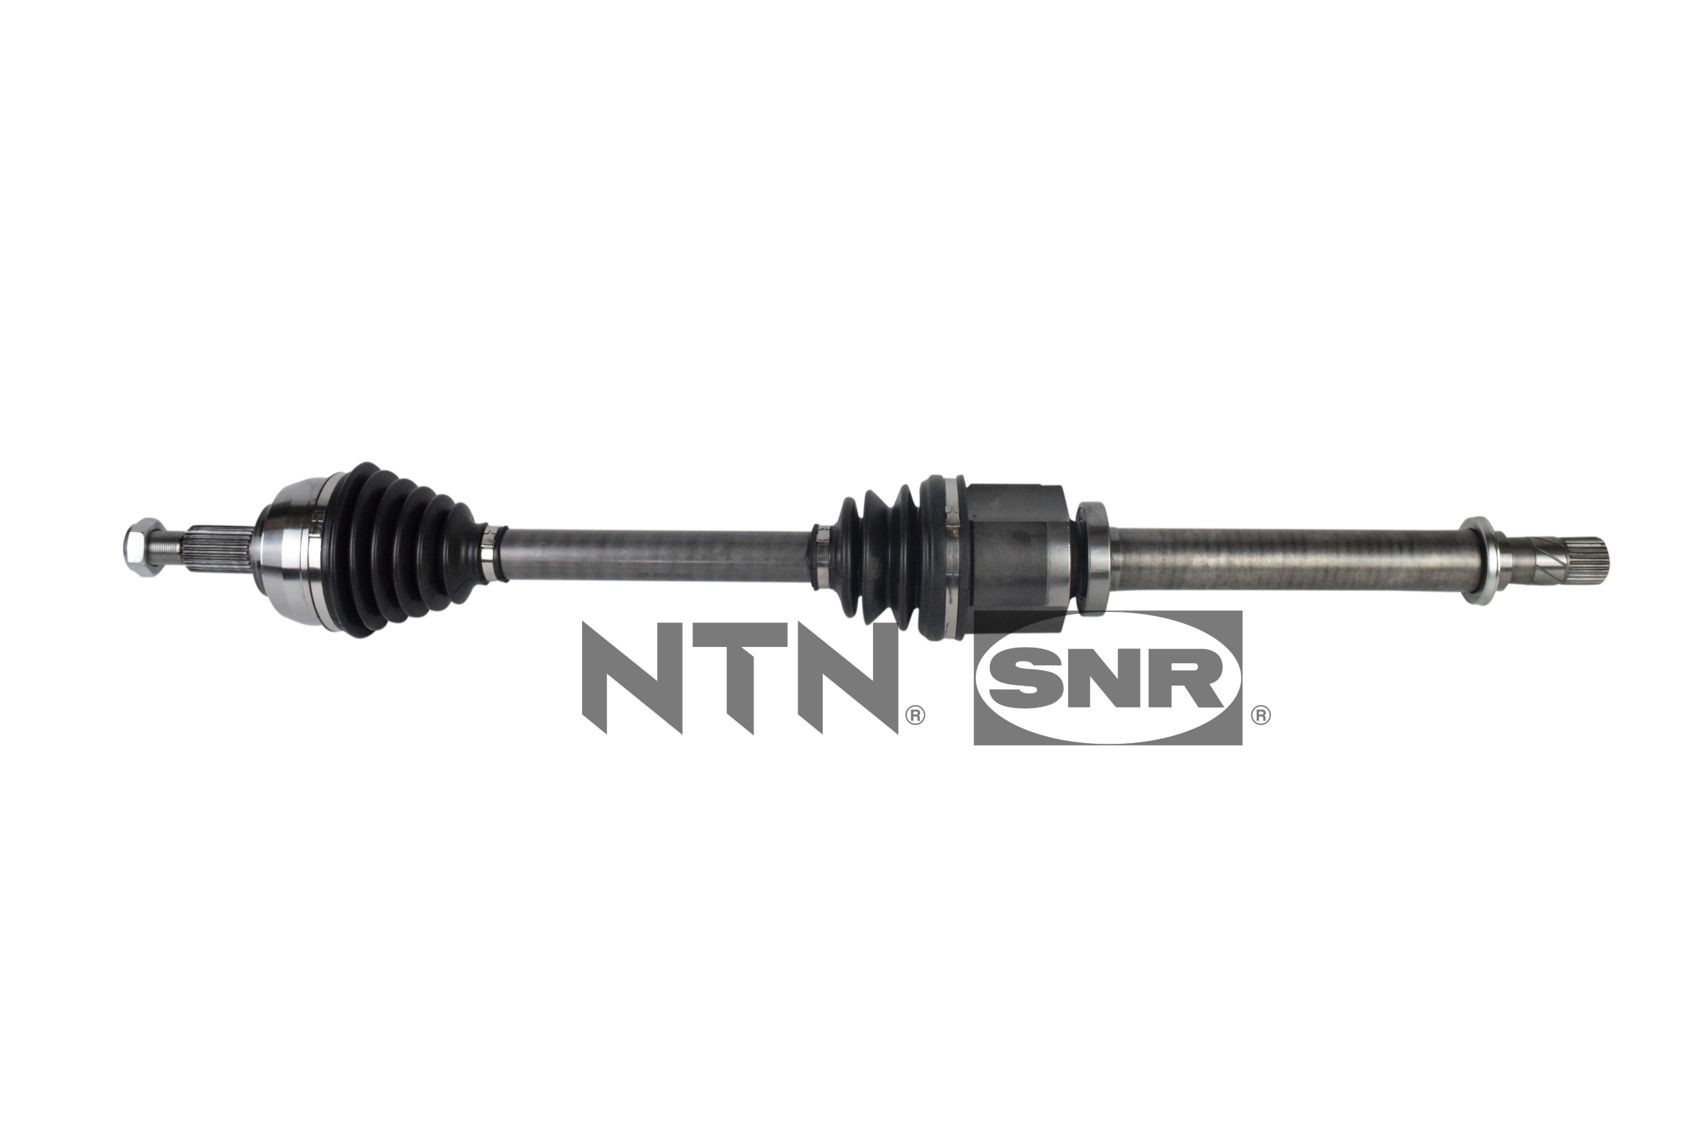 Renault MEGANE CV axle shaft 11022547 SNR DK55.140 online buy